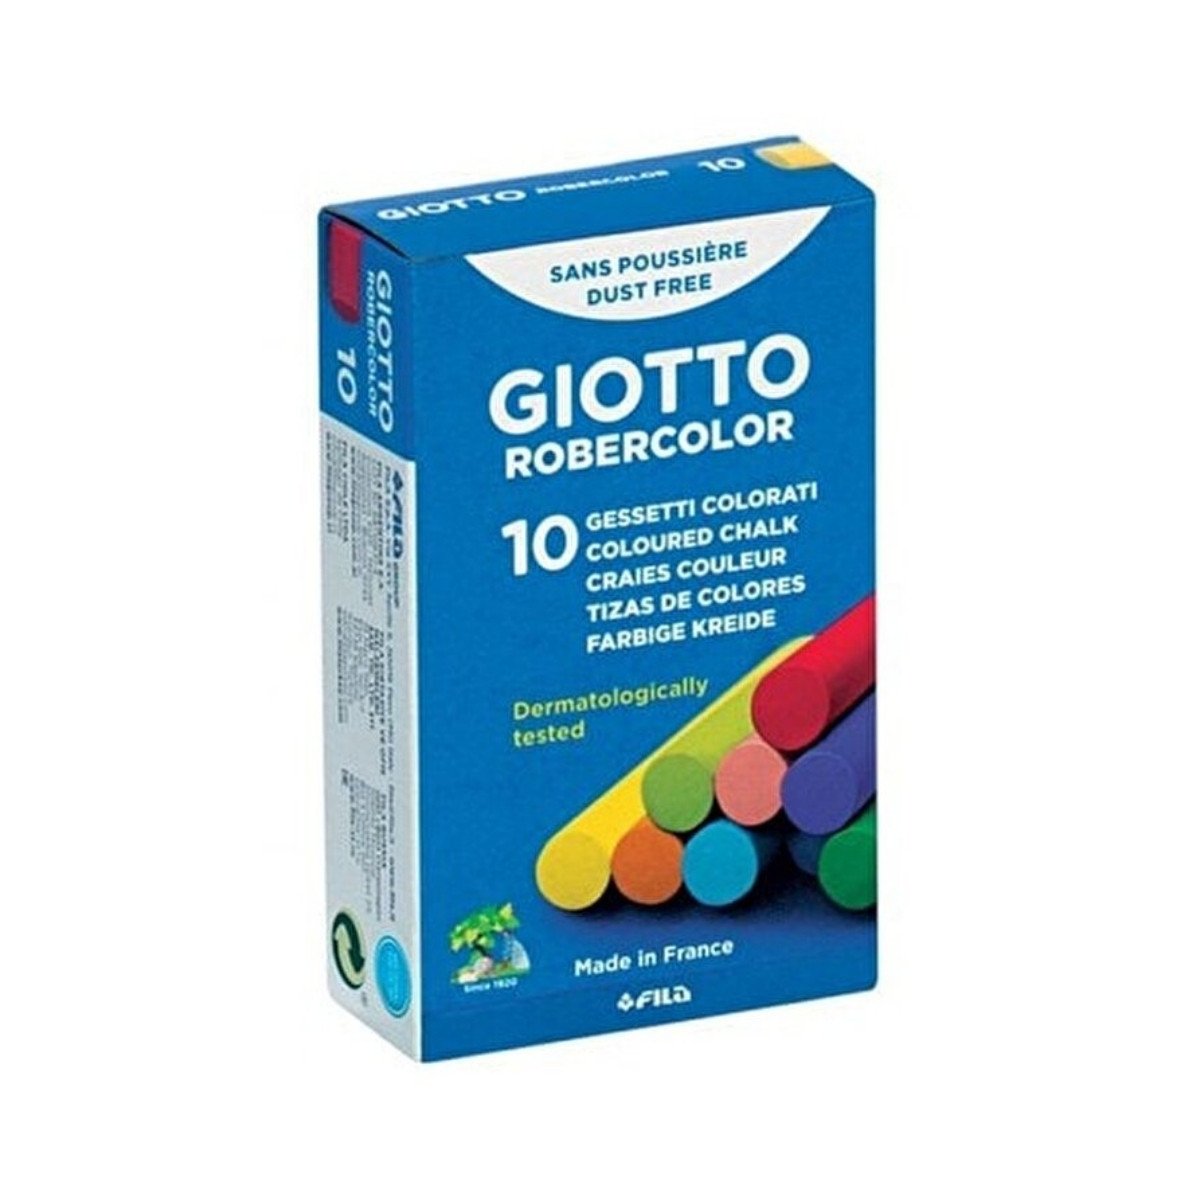 Robercolor Giotto Karışık Renkler Tebeşir 10lu